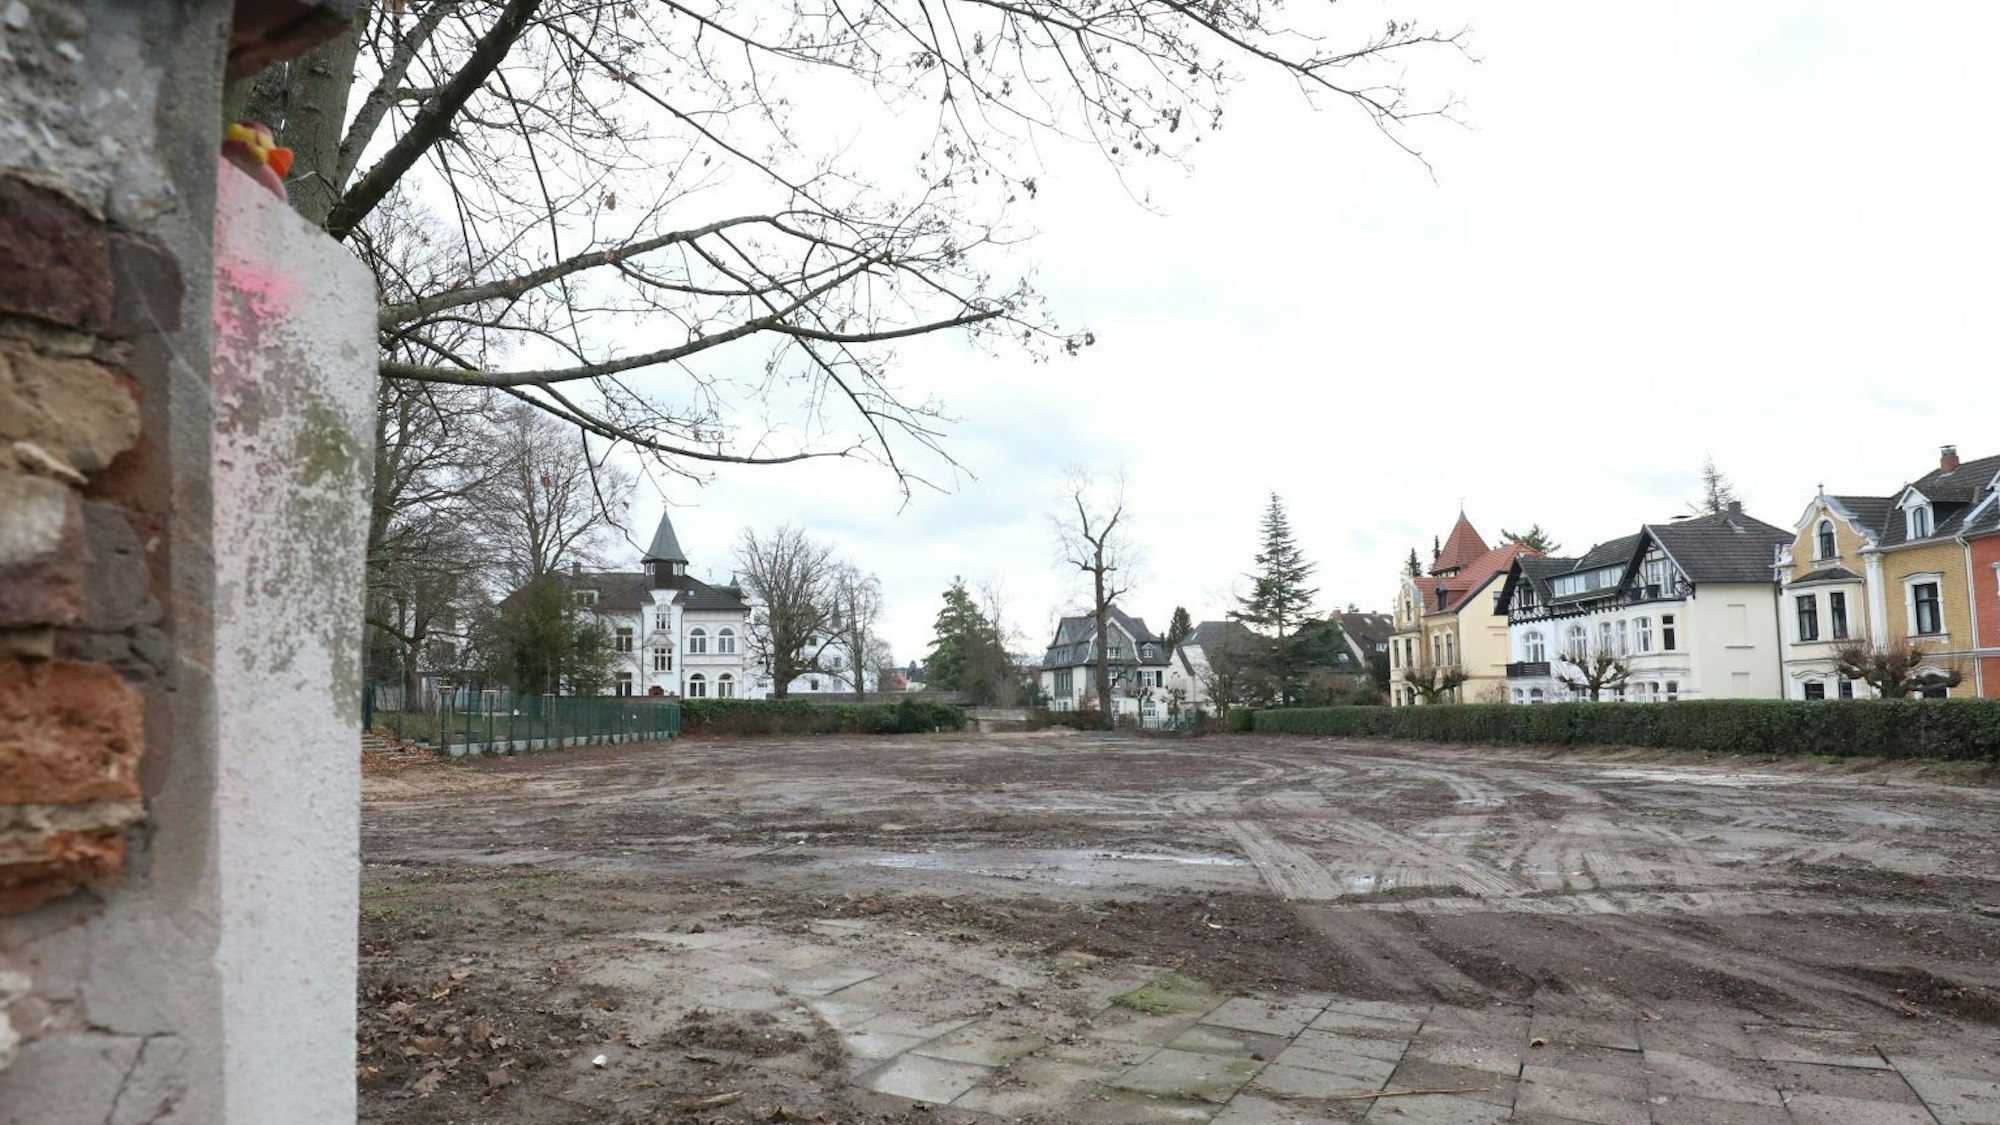 Neben einem Stück abgebrochener Mauer liegt eine große leere Fläche mit nacktem Boden. Rechts im Hintergrund sind alte Jugendstil-Villen zu sehen, die das Stadtbild in der Königin-Sophie-Straße prägen.